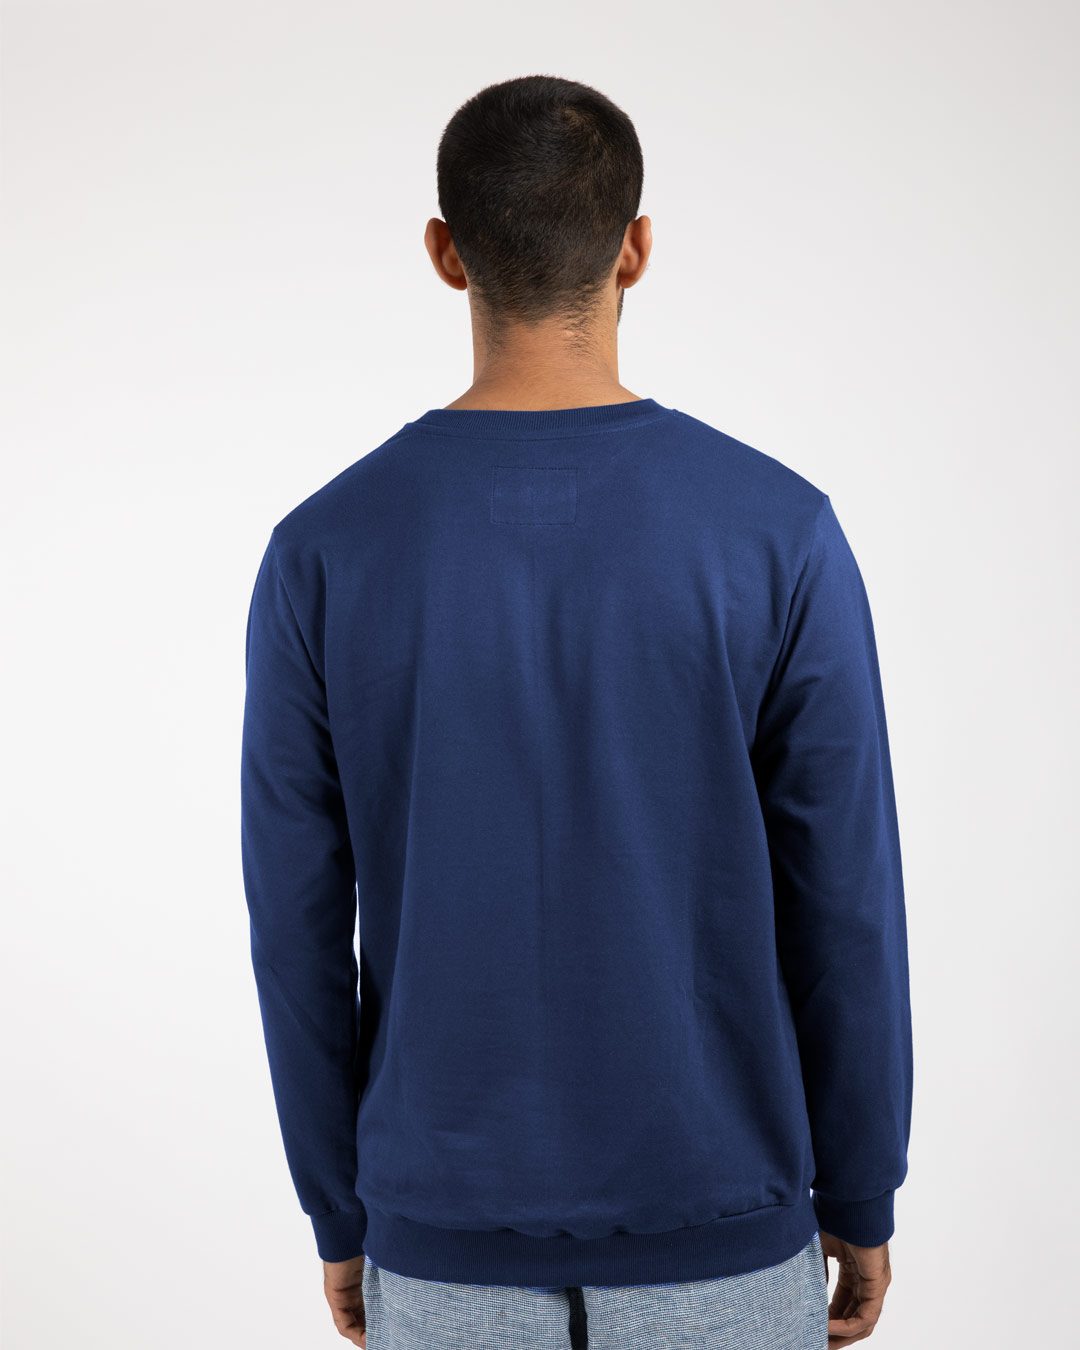 Shop Taz Trouble Maker Fleece Light Sweatshirts (LTL)-Back